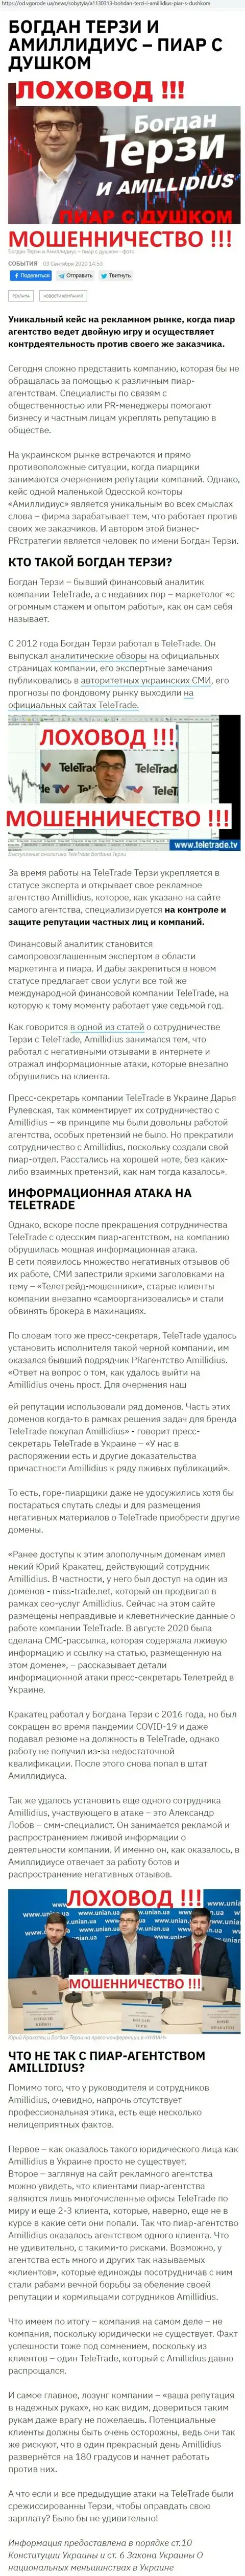 Богдан Терзи сомнительный партнёр, информация со слов уже бывшего работника пиар фирмы Амиллидиус Ком